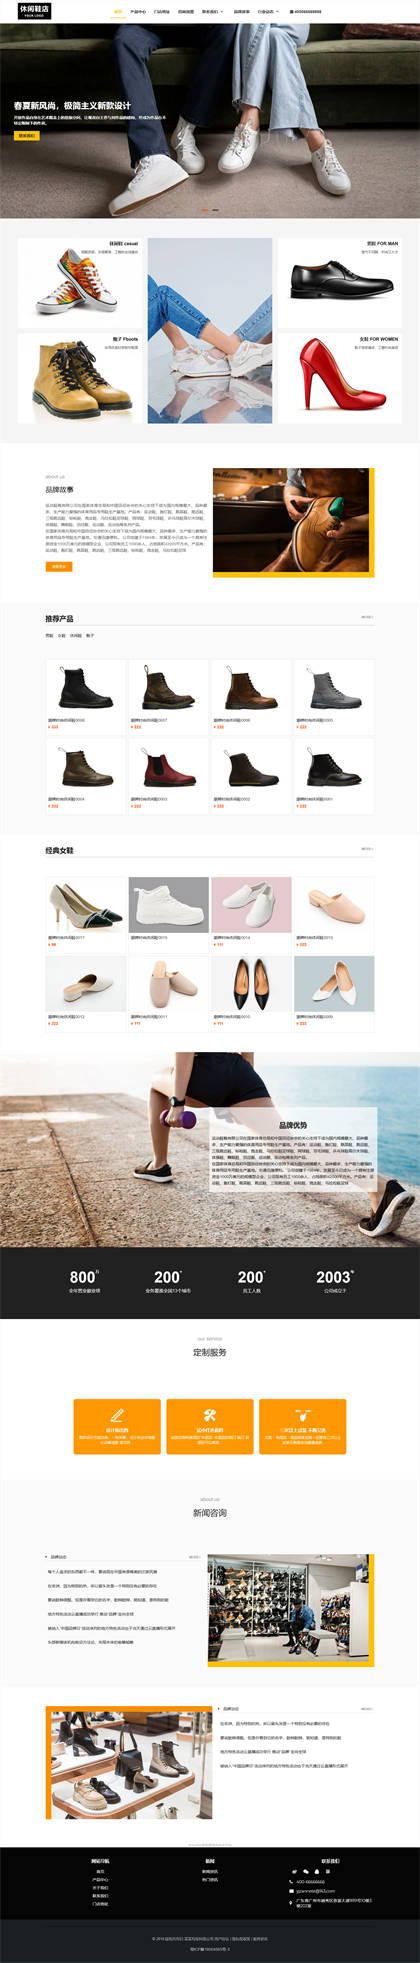 时尚休闲鞋-品牌运动鞋-品牌男鞋-品牌女鞋-鞋业企业网站模板网站建设网站模板图片